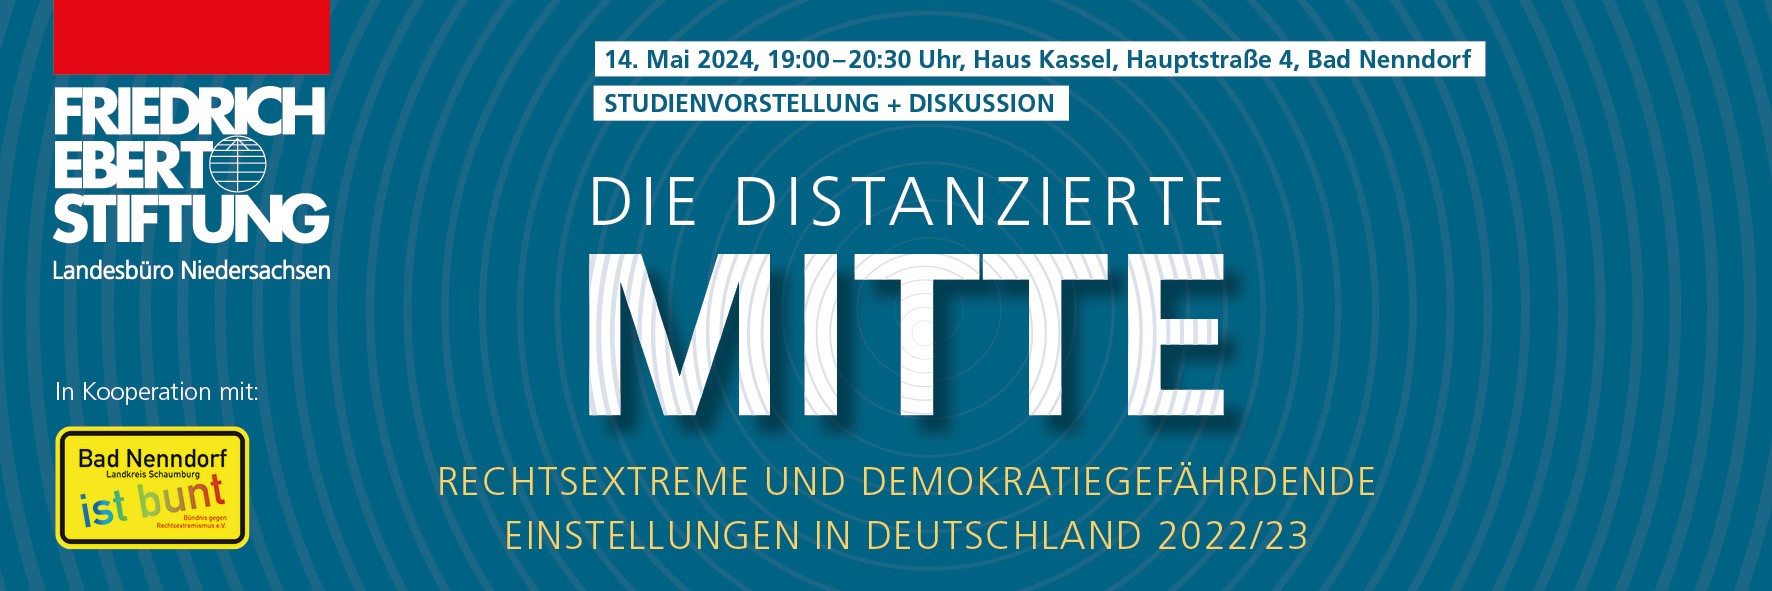 Studienvorstellung "Die distanzierte Mitte. Rechtsextreme und demokratiegefährdende Einstellungen in Deutschland 2022/23"